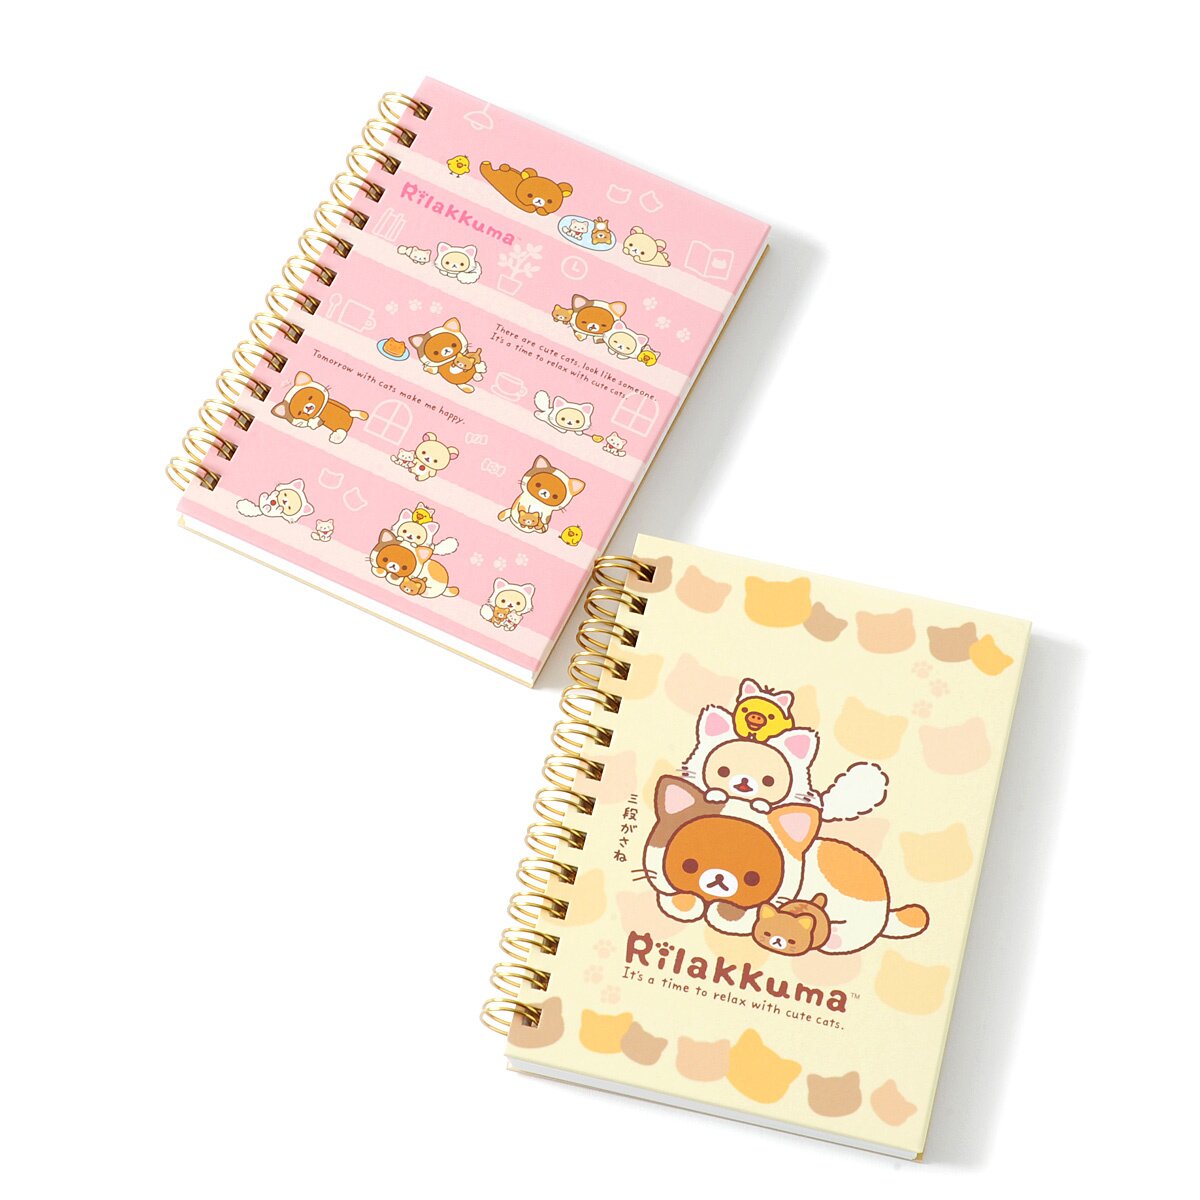 Cute Anime Notebook, Cute Notebook, Kawaii Notebook, 5 X 7-inch